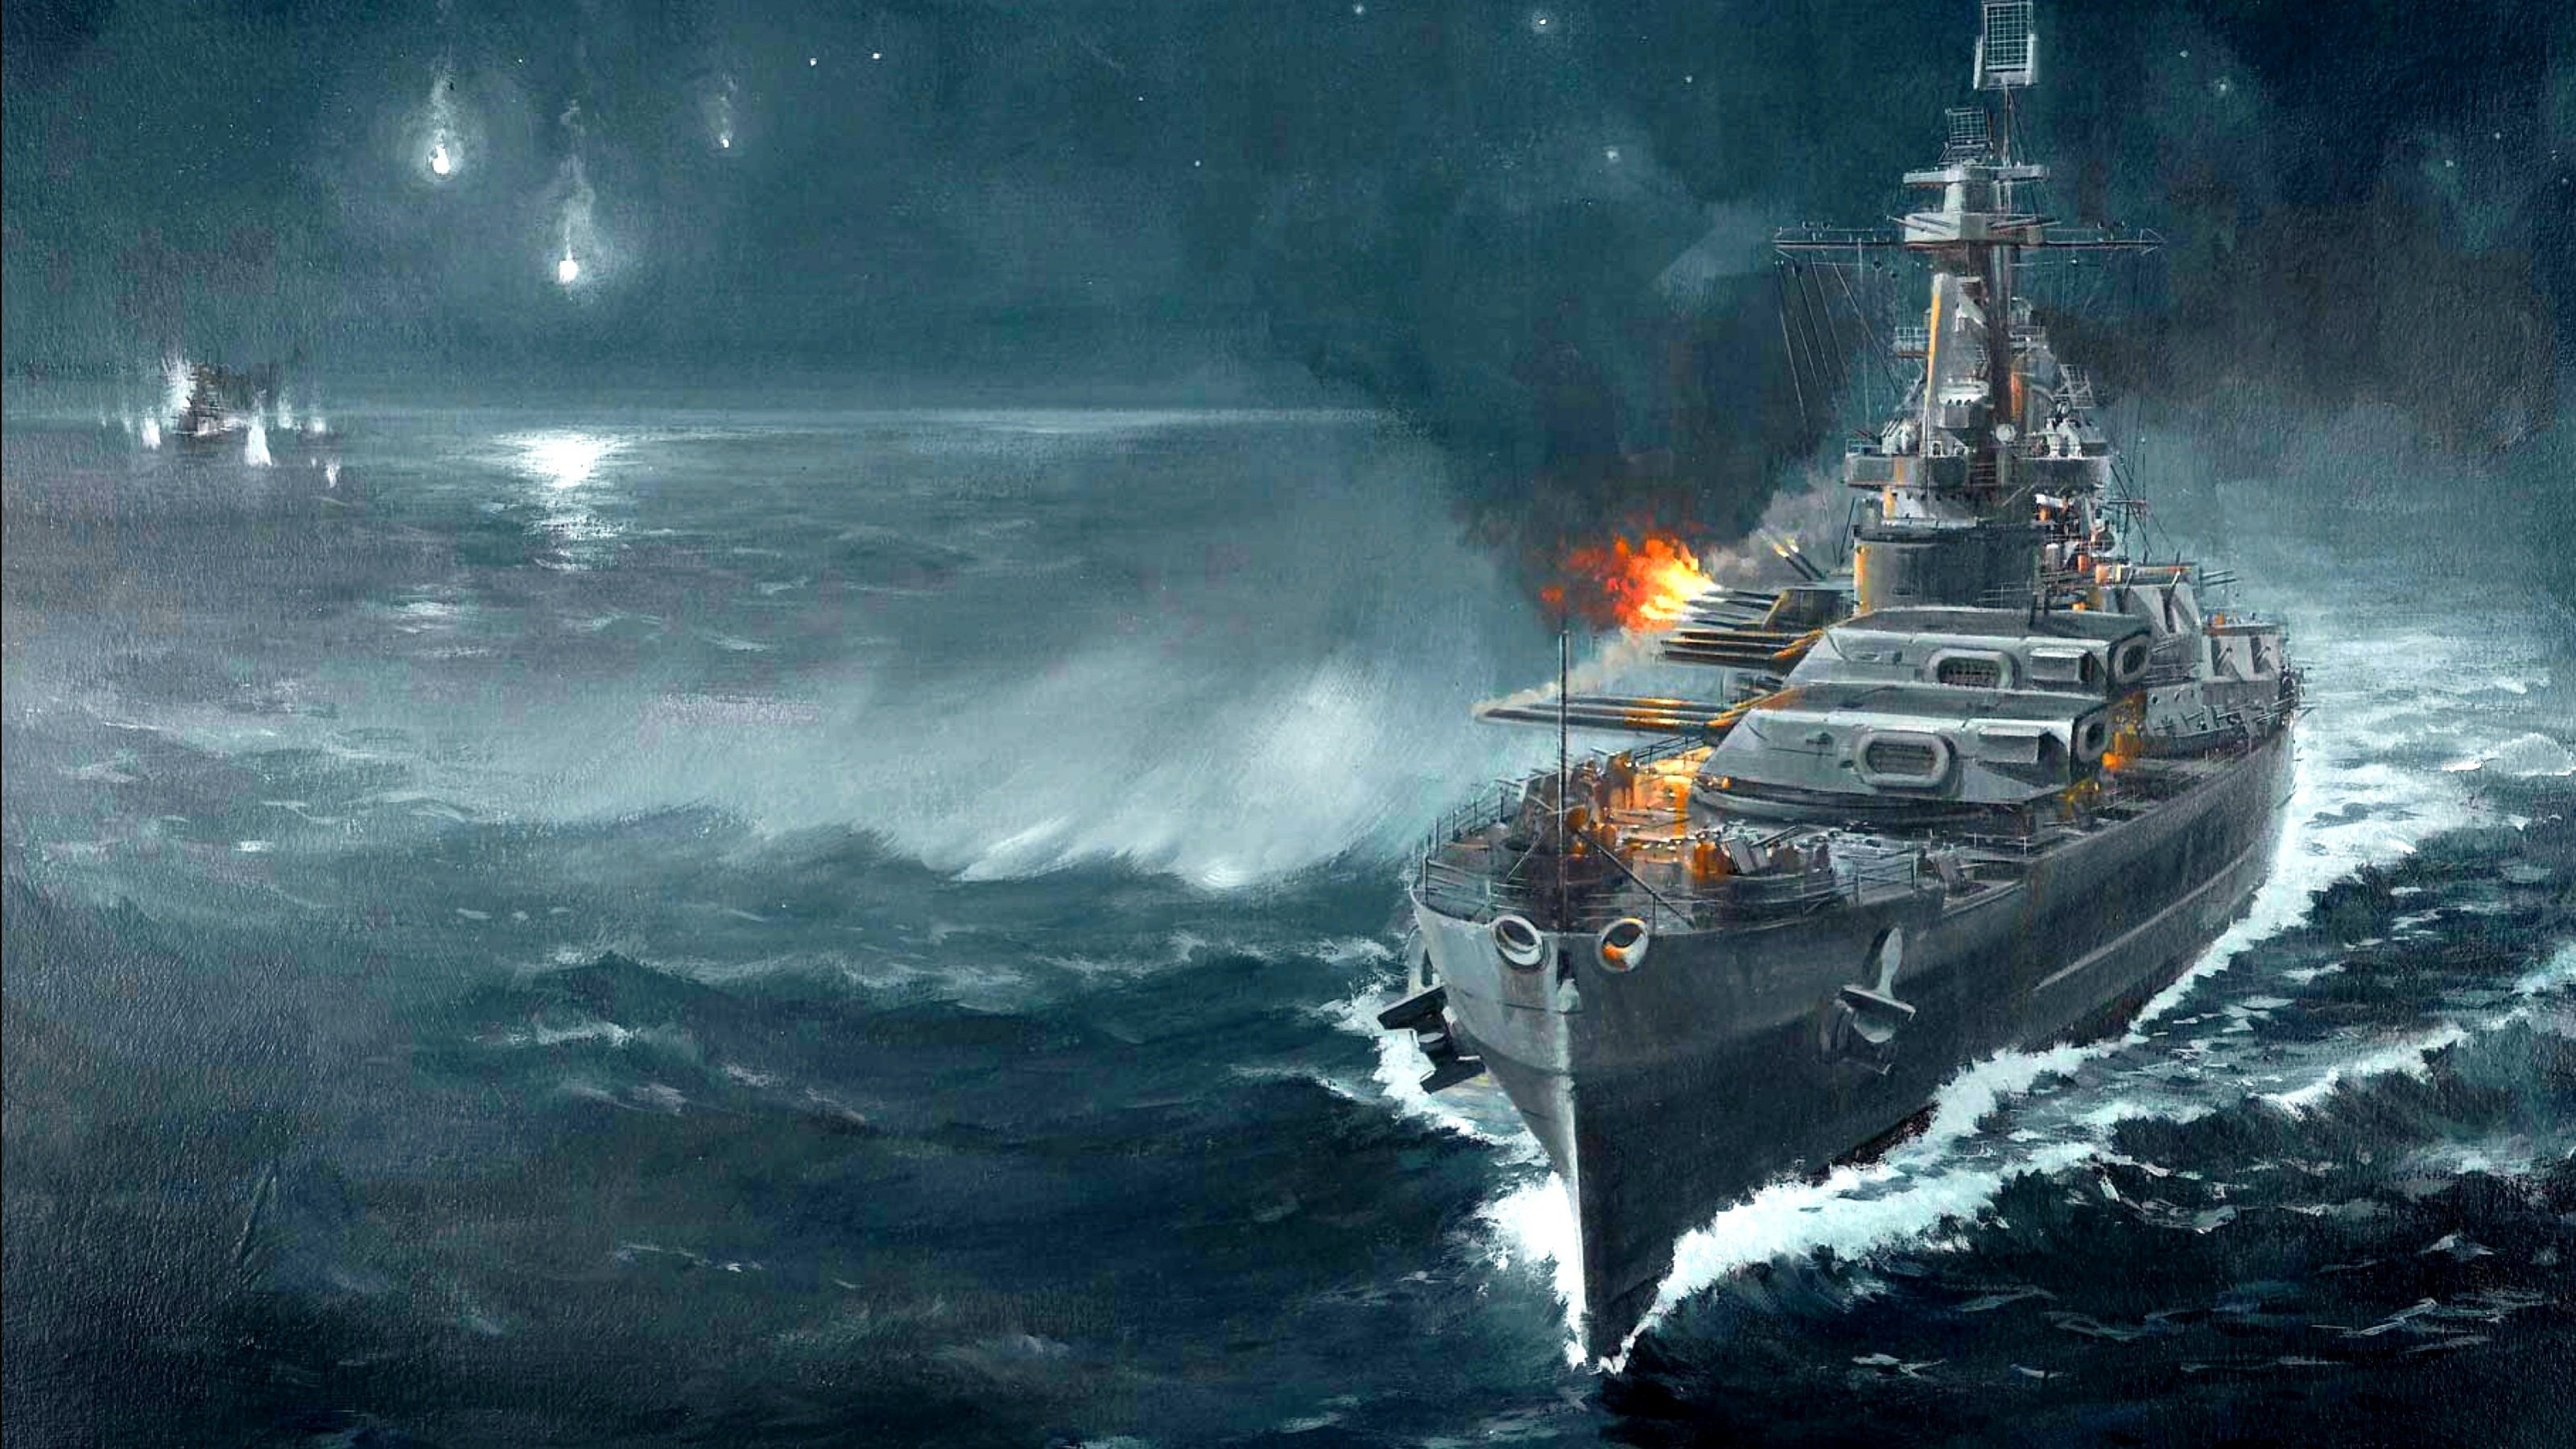 Image de bataille navale